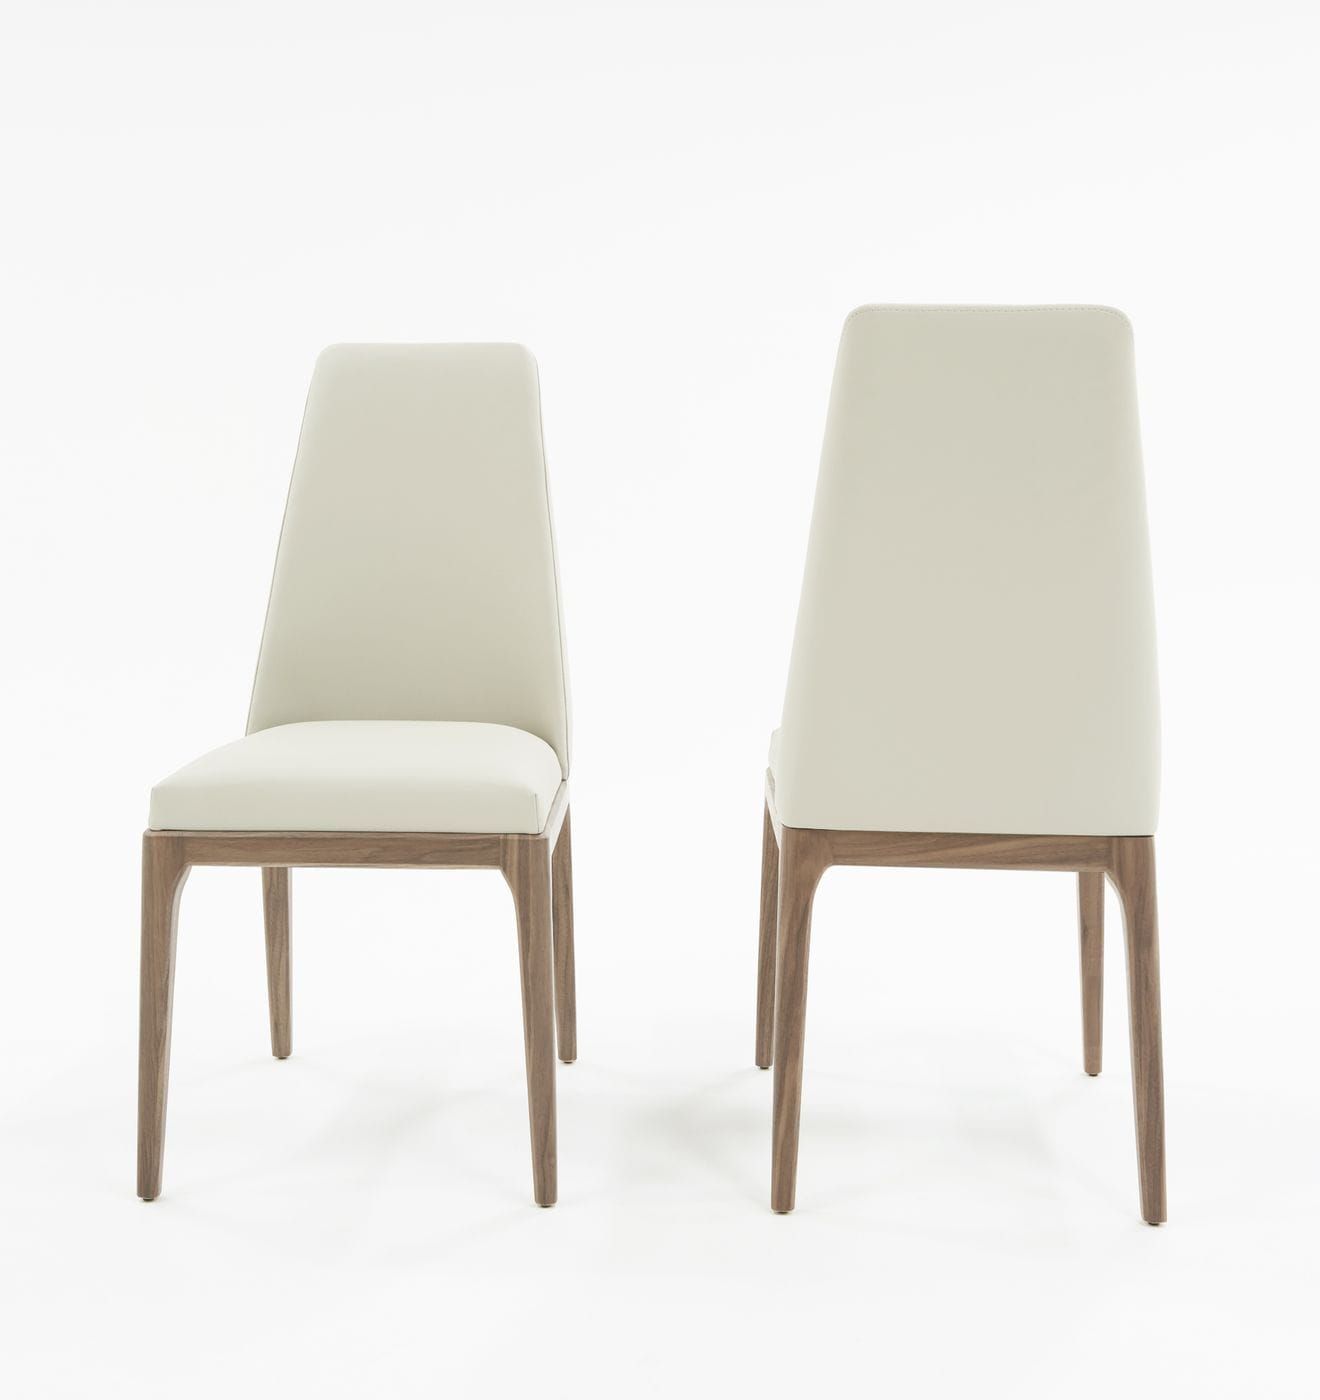 Modrest Encino Modern Grey & Walnut Dining Chair (Set of 2)